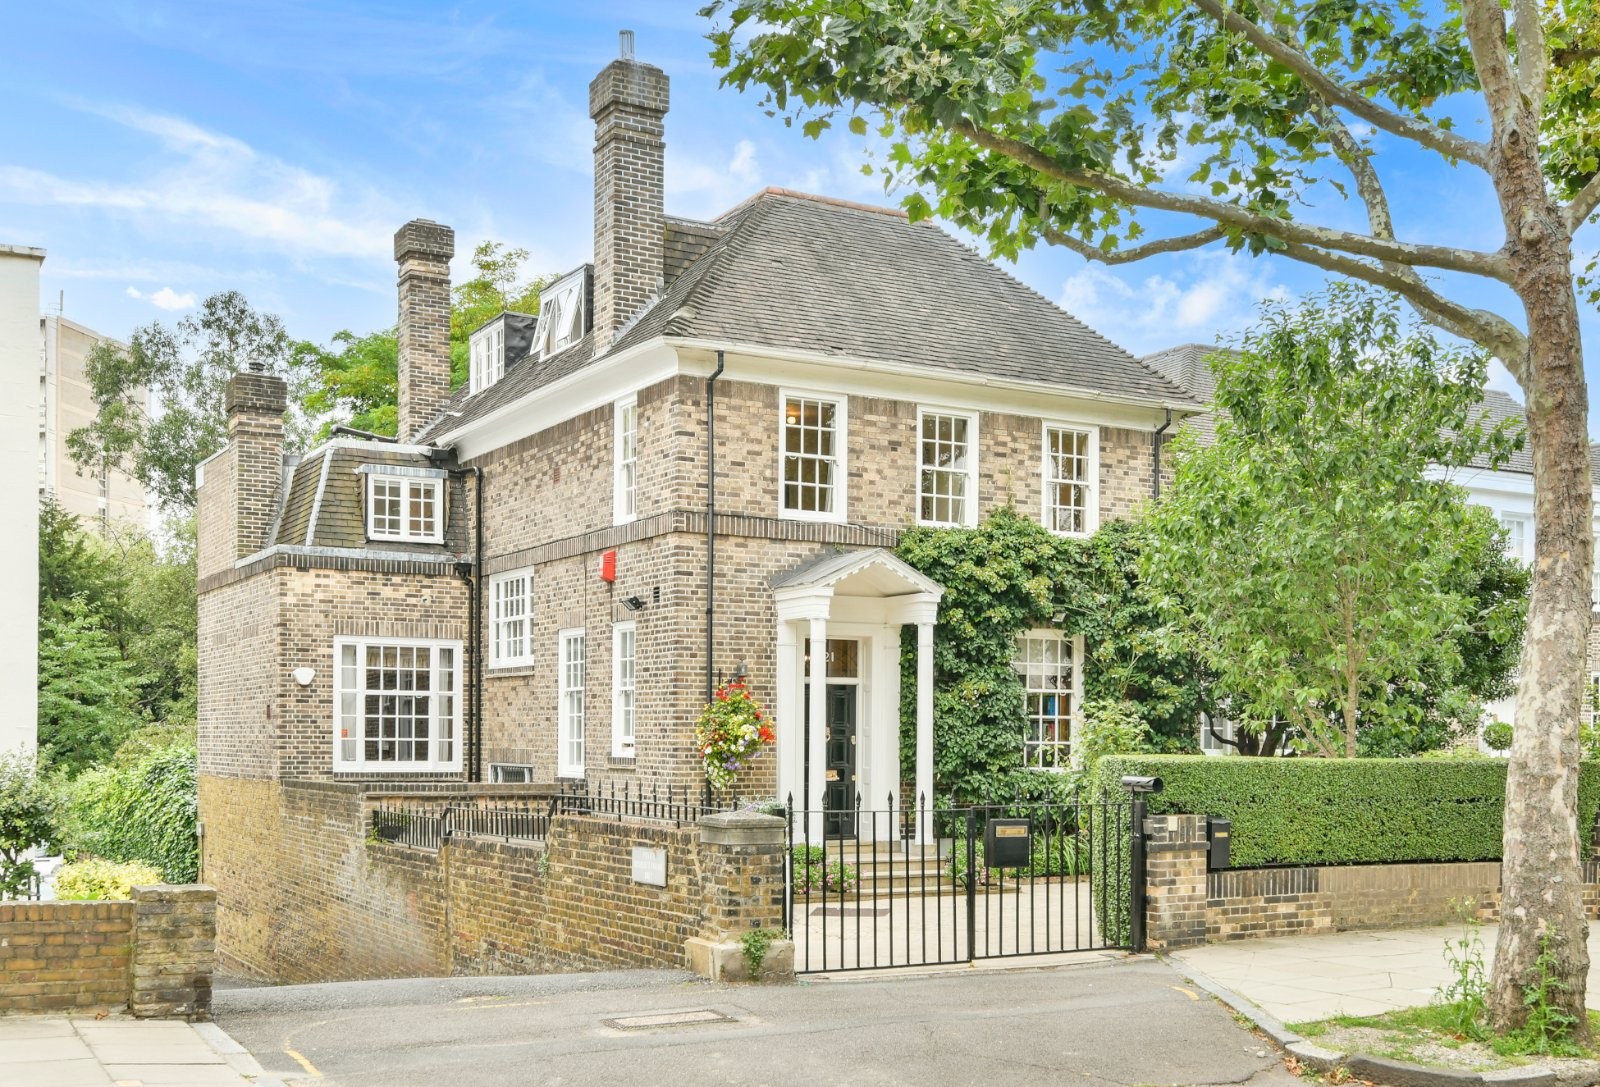 Portal Inmobiliario de Lujo en Londres, presenta chalet de lujo venta en St. John's Wood, inmueble exclusivo para comprar y propiedad familiar en venta en Inglaterra.